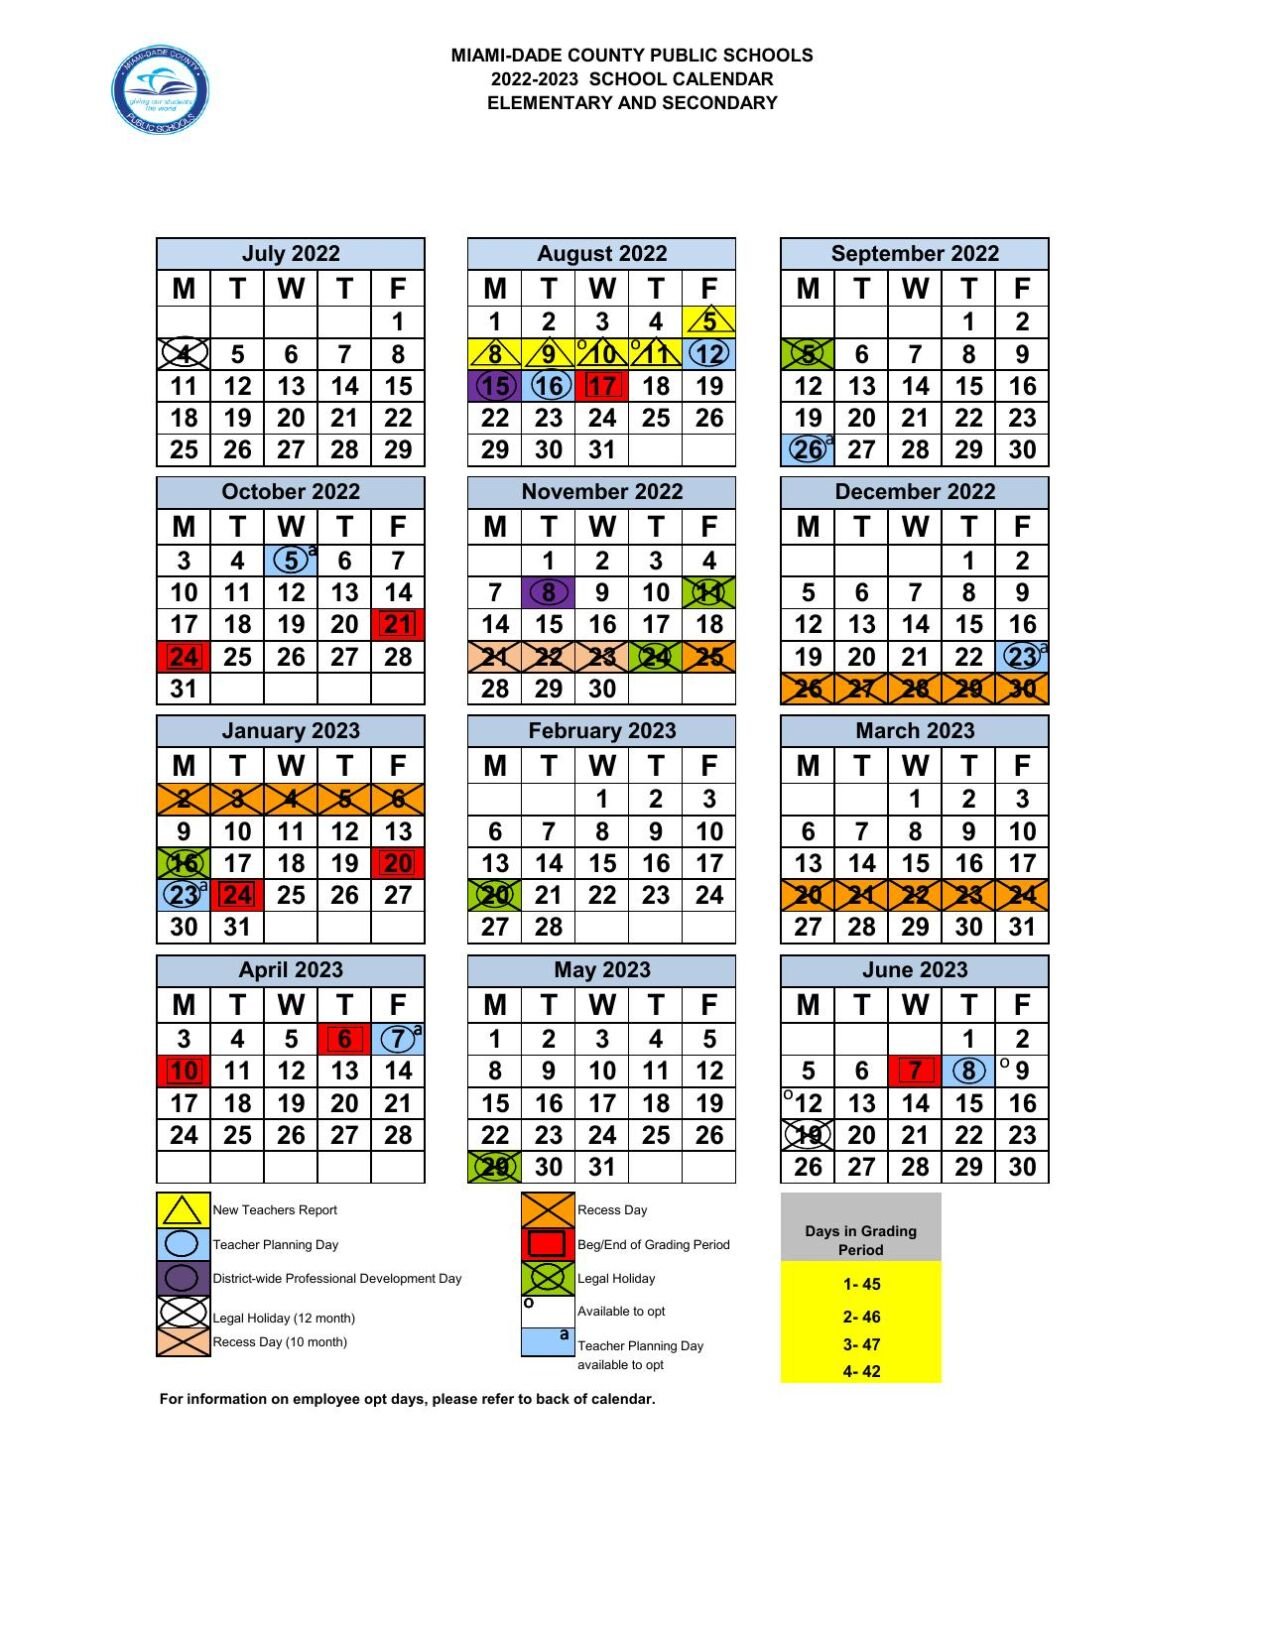 Miami-Dade County Public Schools 2022-2023 Calendar | Education